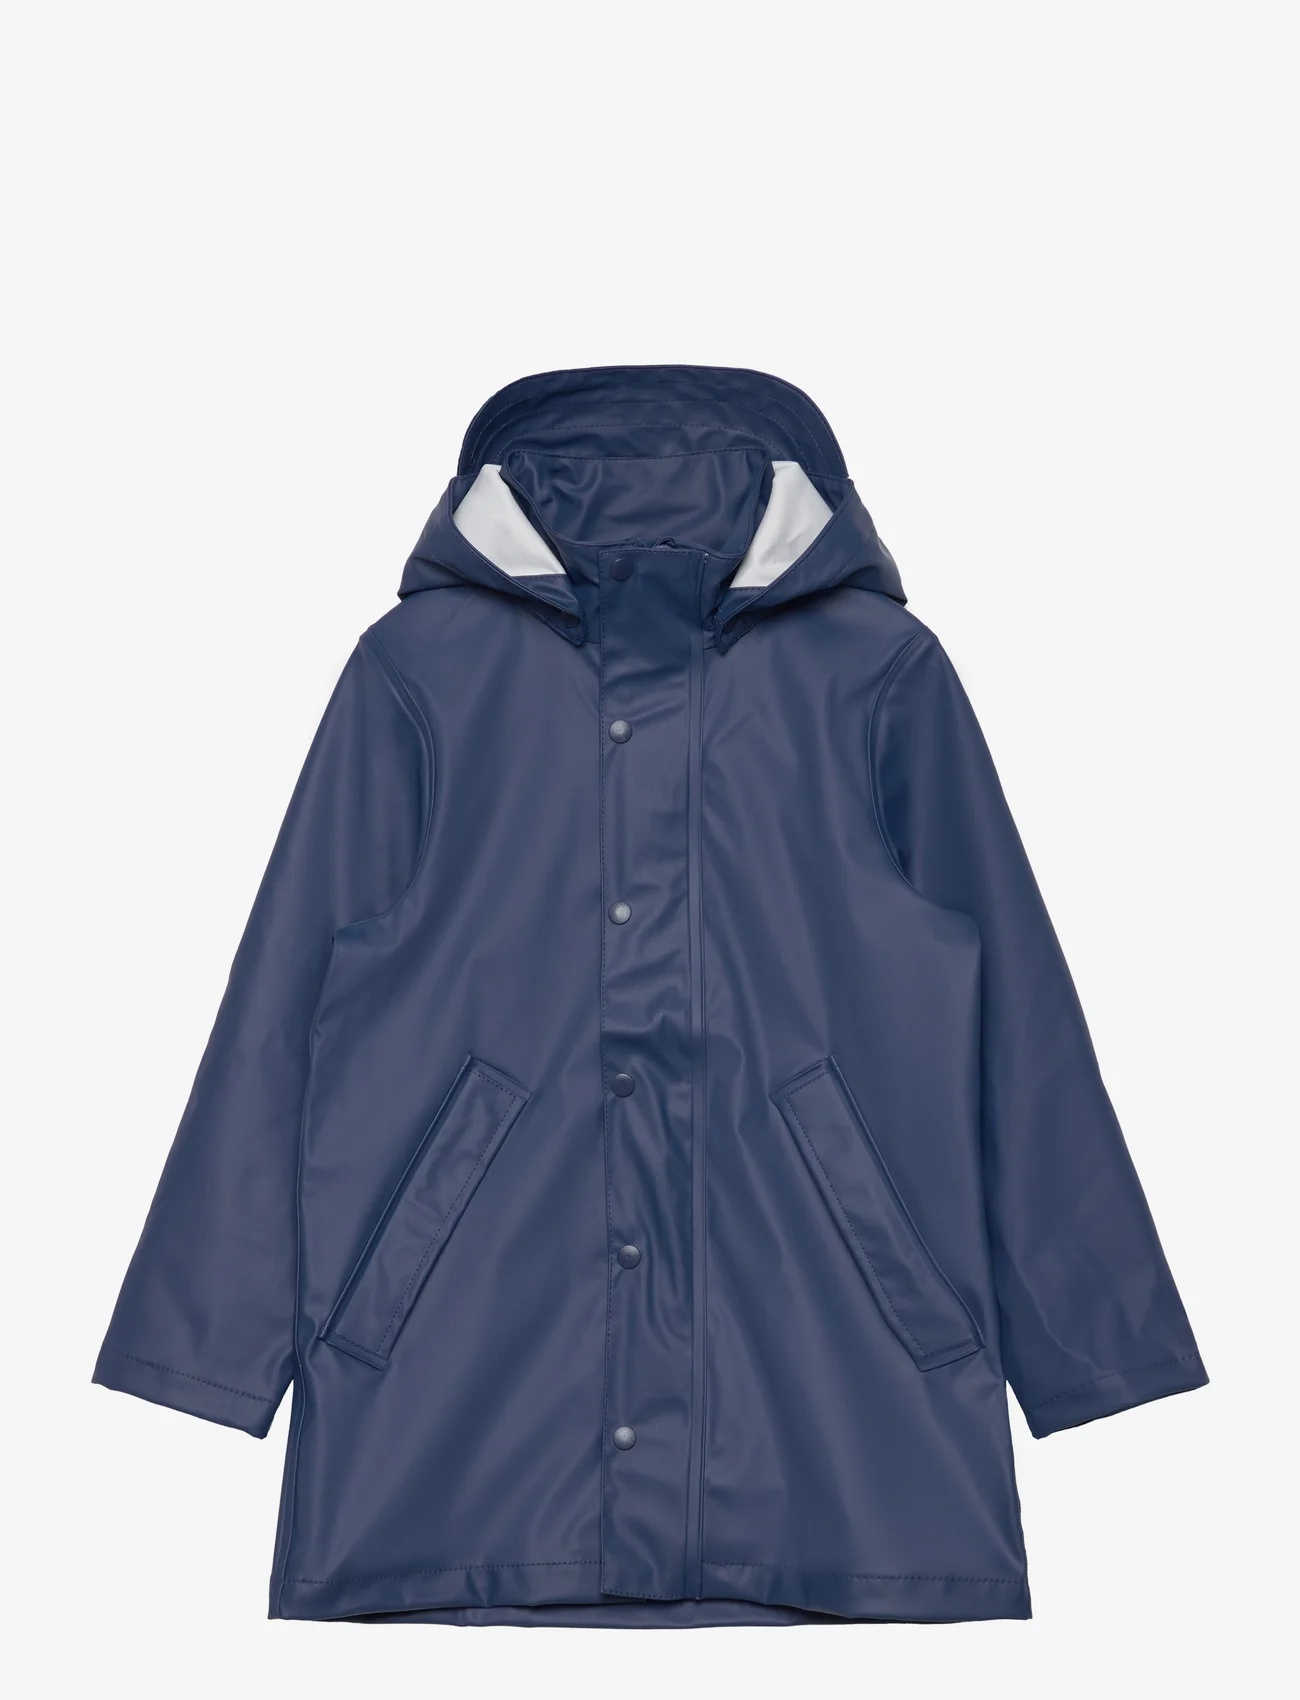 name it - NKNDRY RAIN JACKET LONG 1FO NOOS - rain jackets - insignia blue - 0